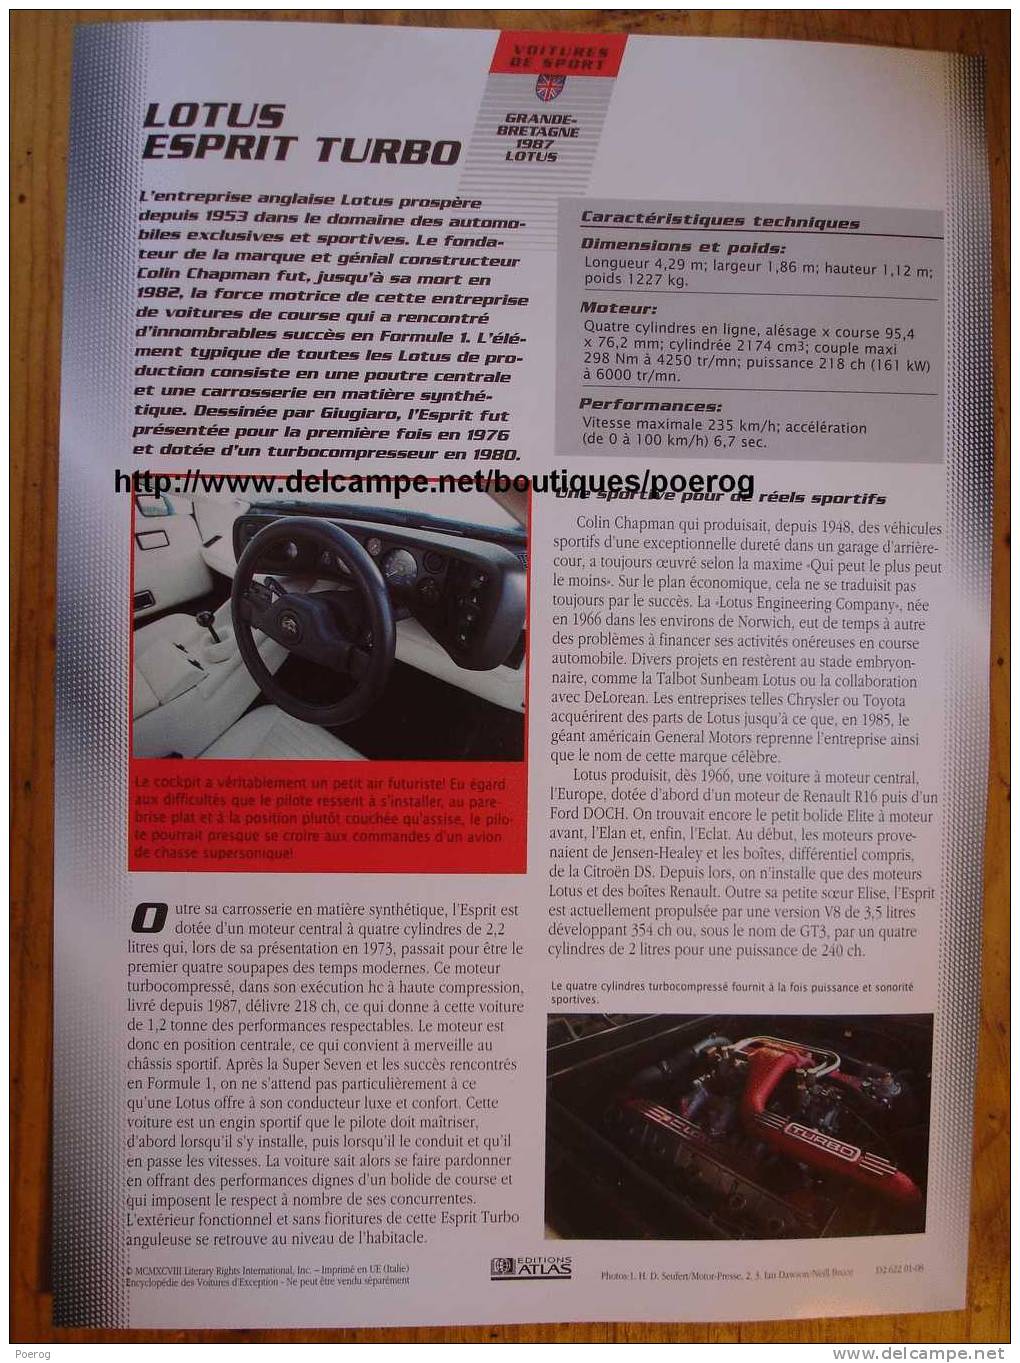 LOTUS ESPRIT TURBO - FICHE VOITURE GRAND FORMAT (A4) - 1998 - Auto Automobile Automobiles Voitures Car Cars - Voitures